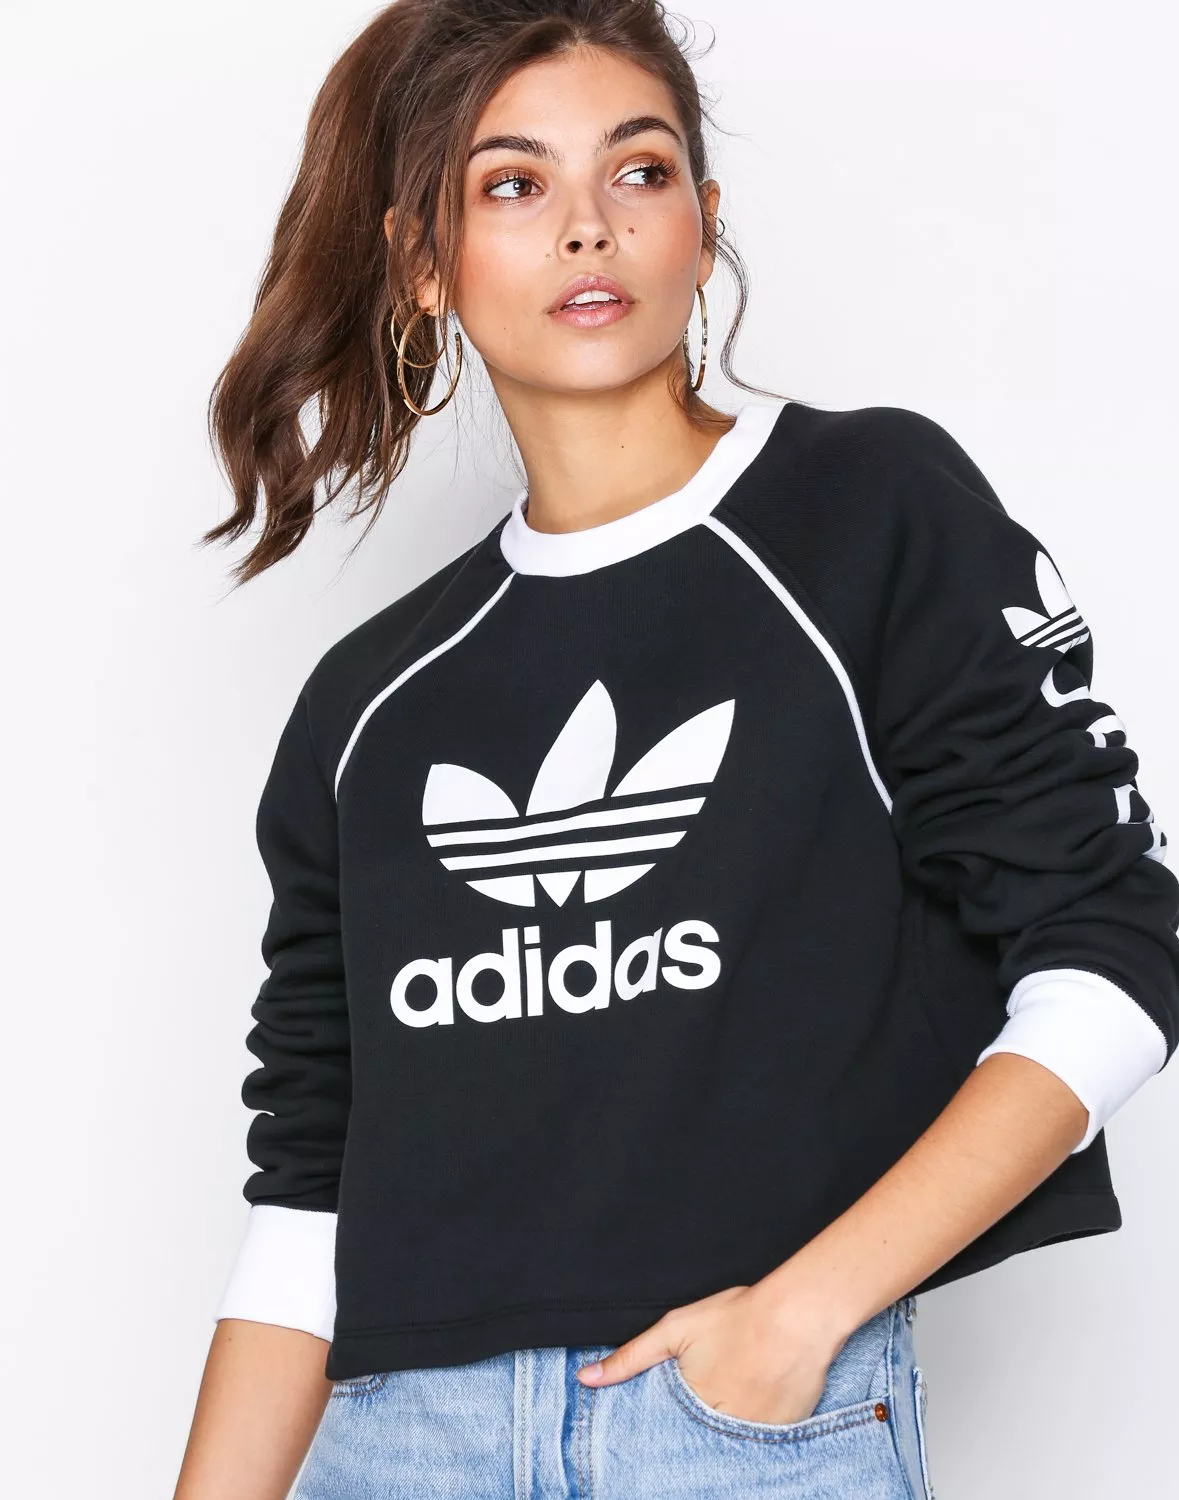 Buy Adidas Originals Sweater - Black | Nelly.com